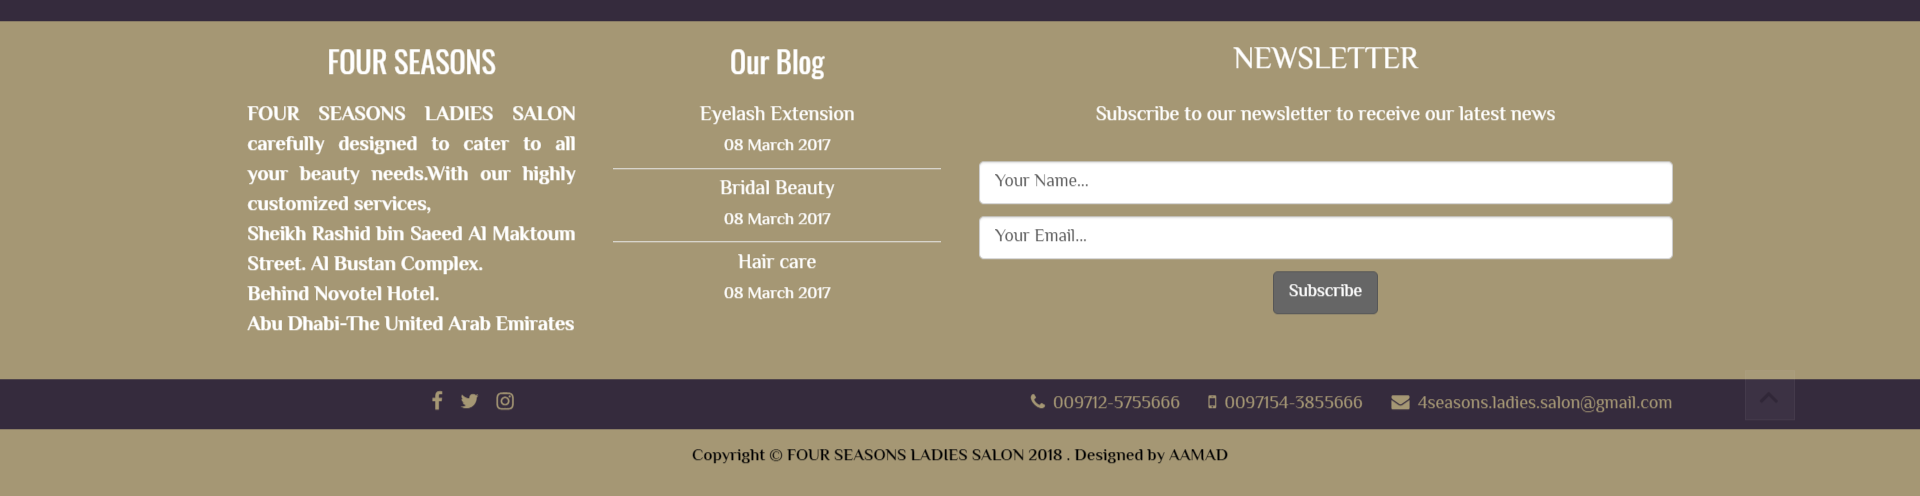 تصميم موقع الكتروني لصالون تجميل فورسيزون في الإمارات - أبوظبي